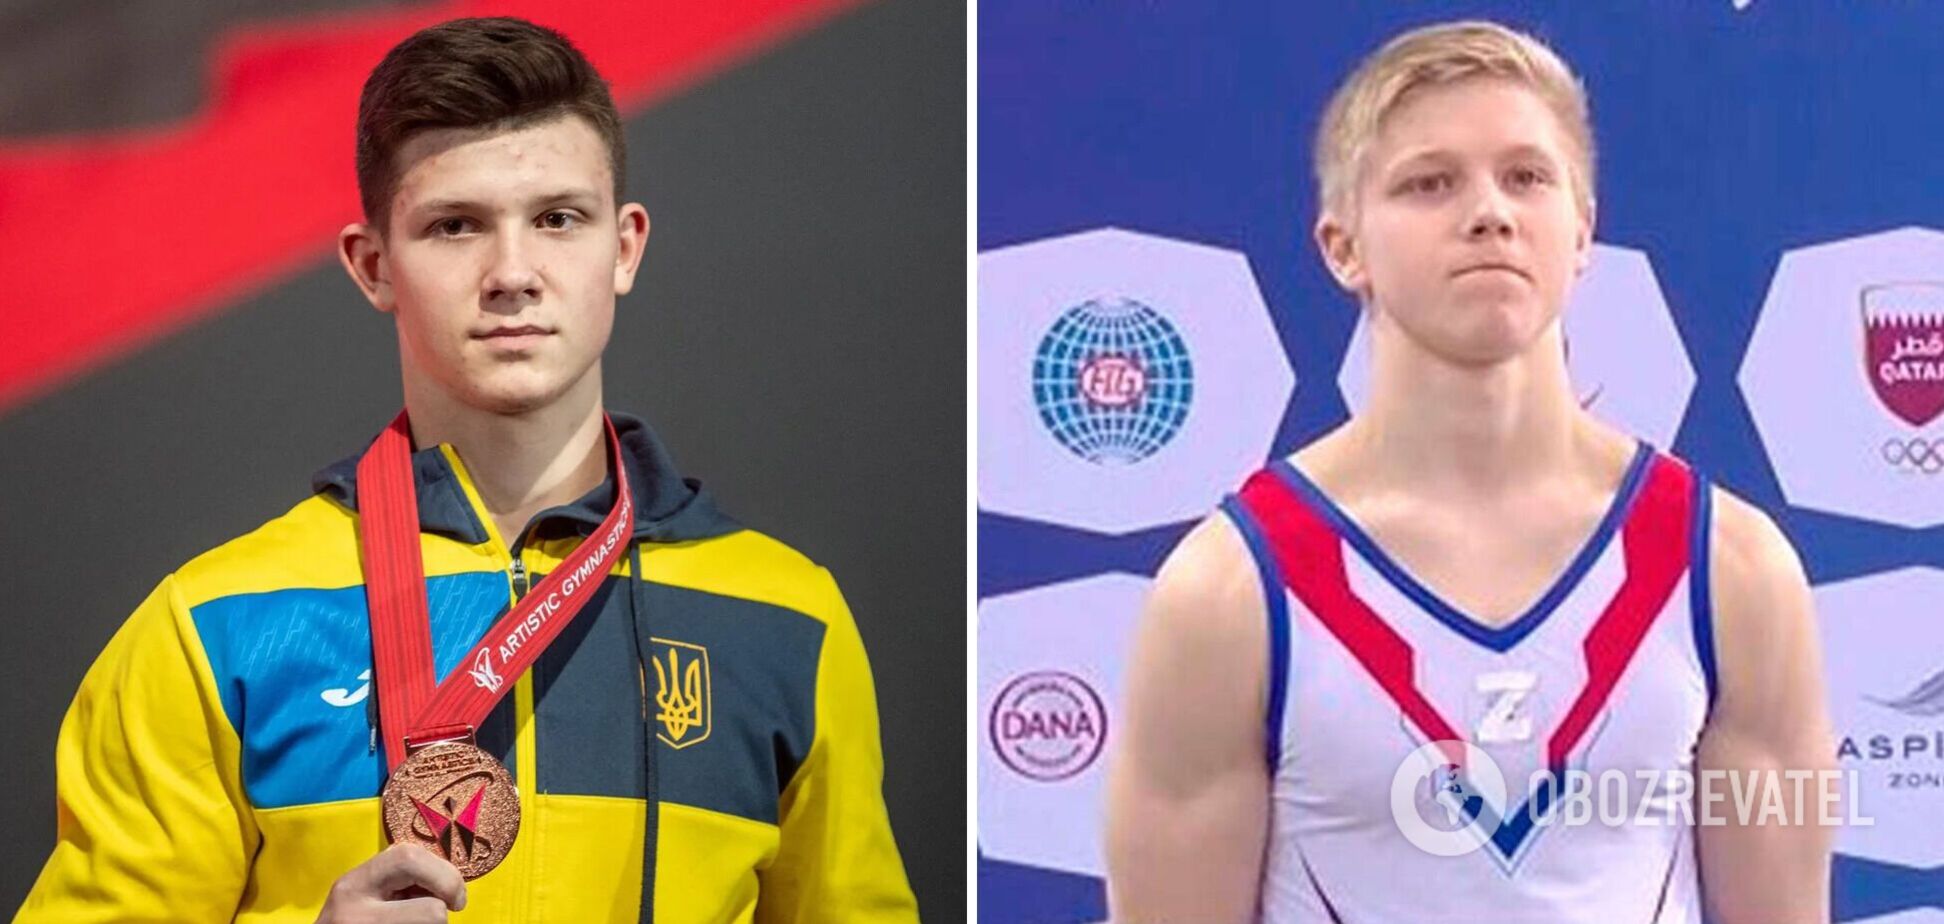 Украинский гимнаст, которого россиянин провоцировал символом агрессии Z, объявил бойкот турниру в Италии из-за РФ